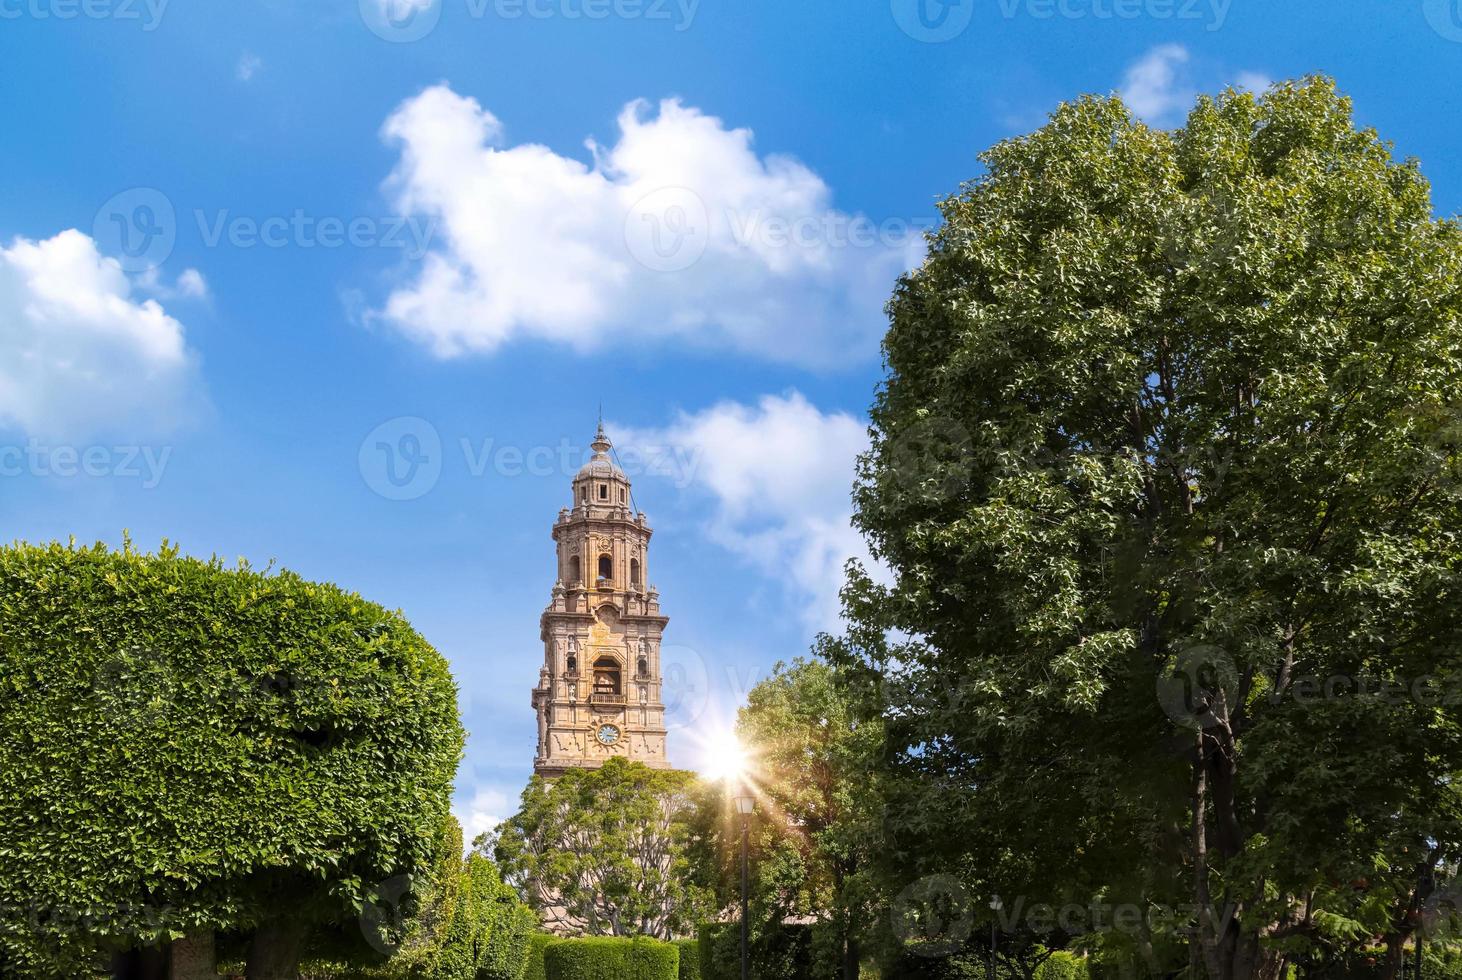 messico, morelia, una popolare destinazione turistica cattedrale morelia su plaza de armas nel centro storico foto